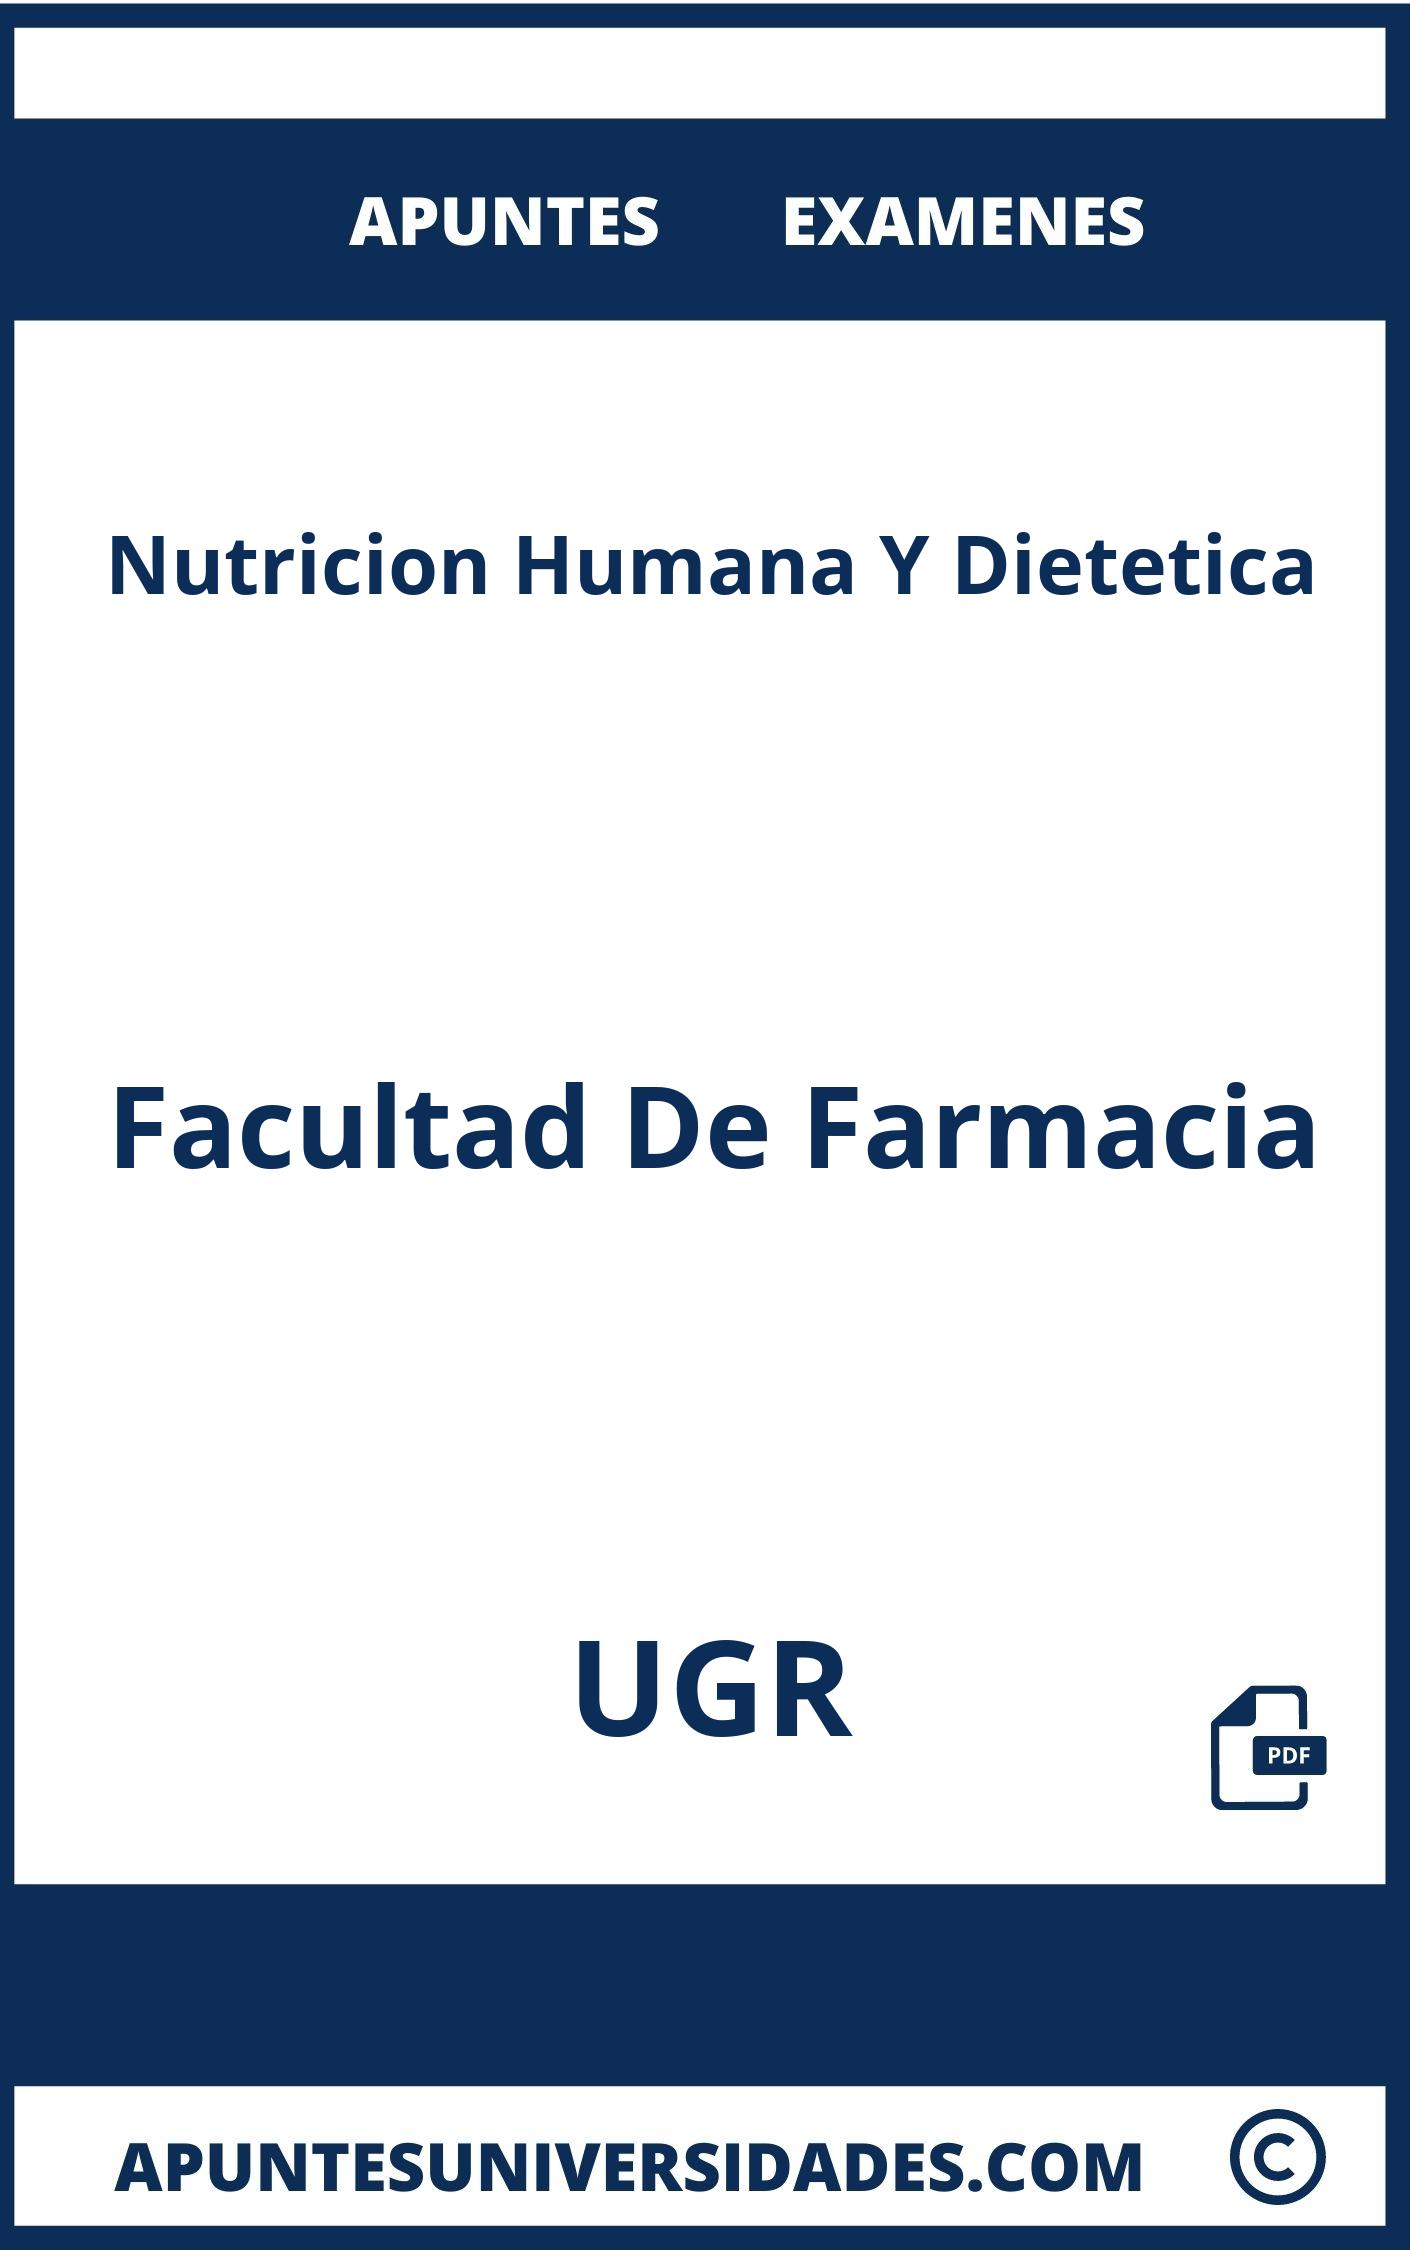 Examenes y Apuntes de Nutricion Humana Y Dietetica UGR